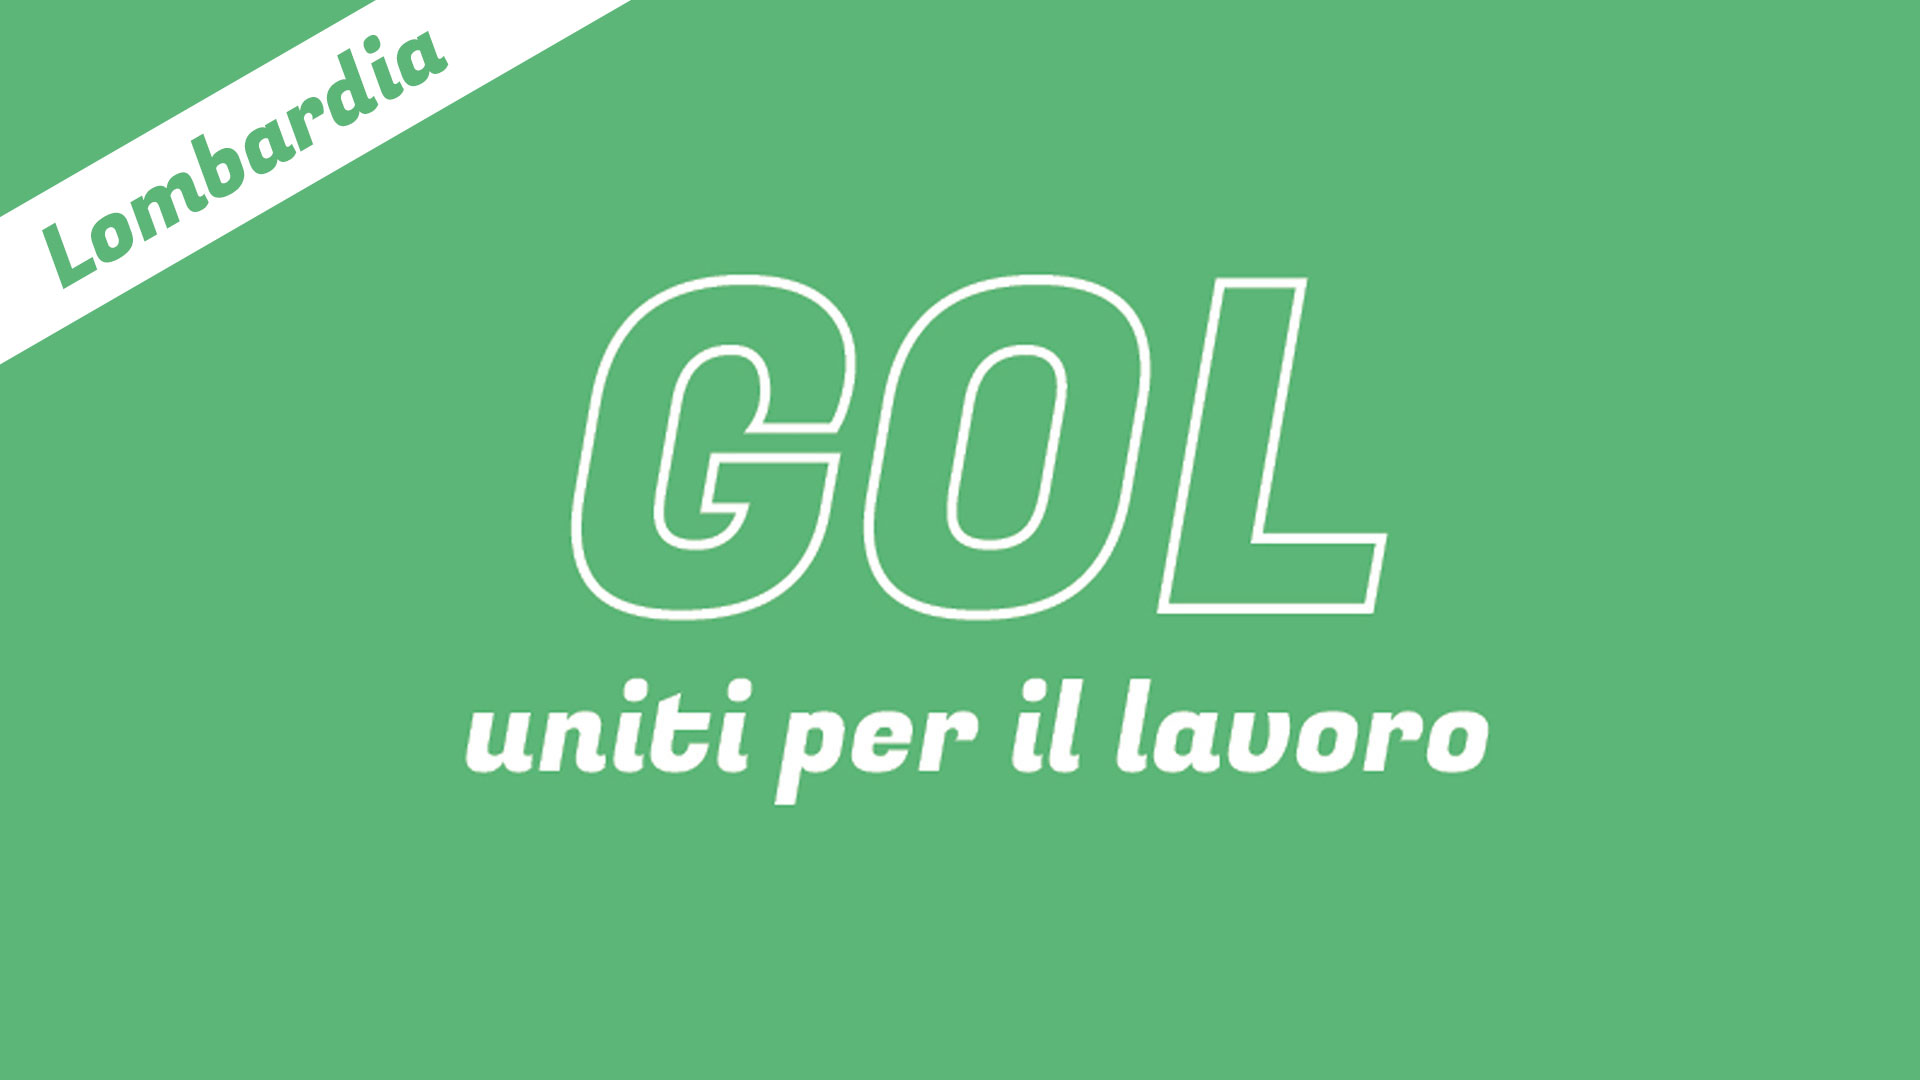 GOL! Lombardia – Uniti per il lavoro